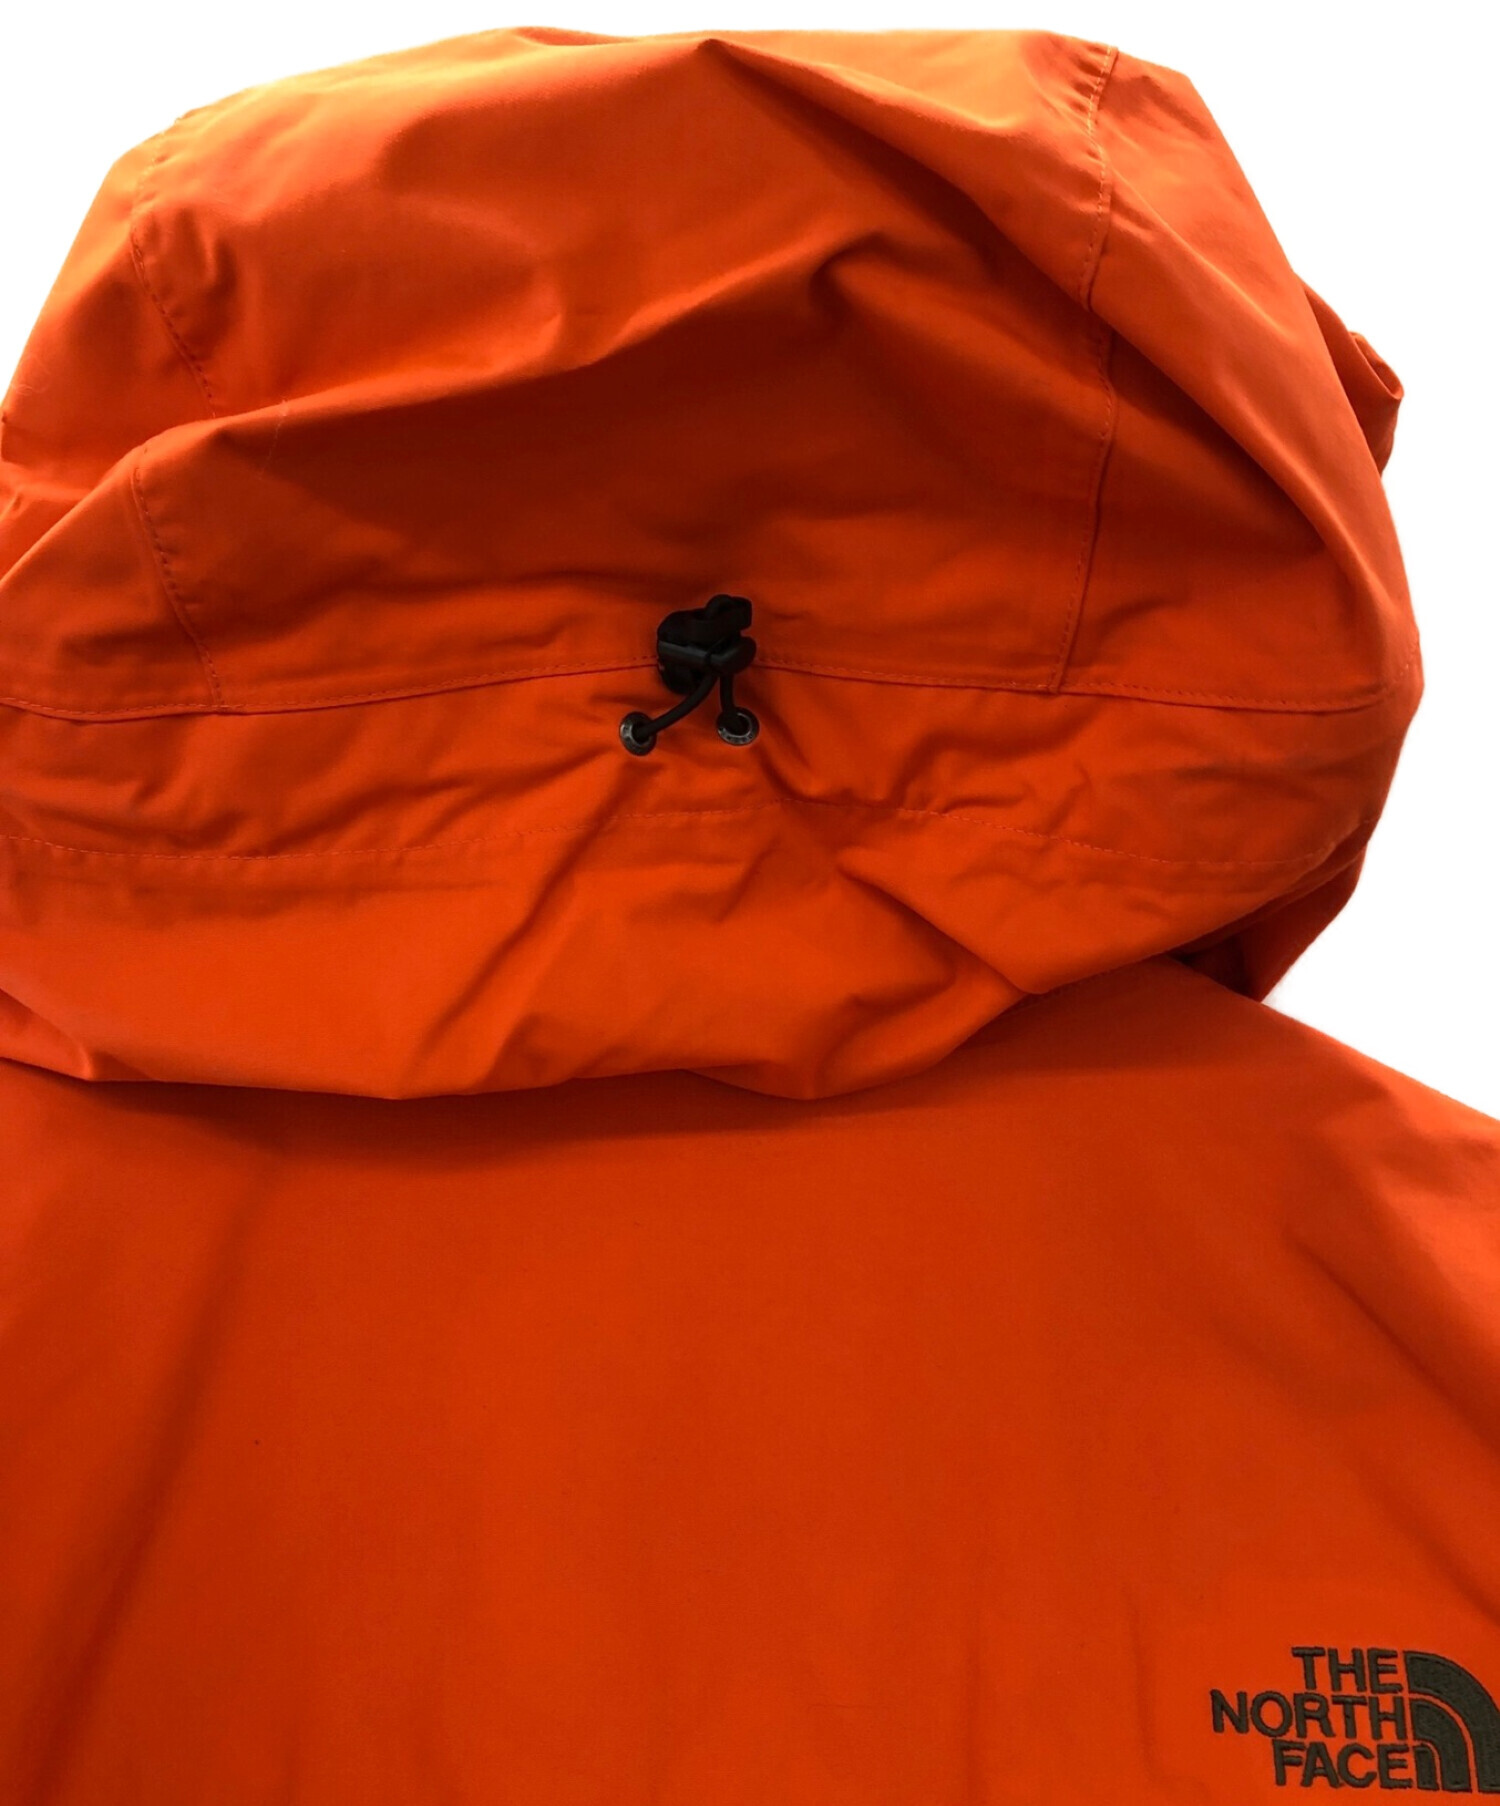 THE NORTH FACE (ザ ノース フェイス) スクープジャケット ファイヤーオレンジ サイズ:XL 未使用品